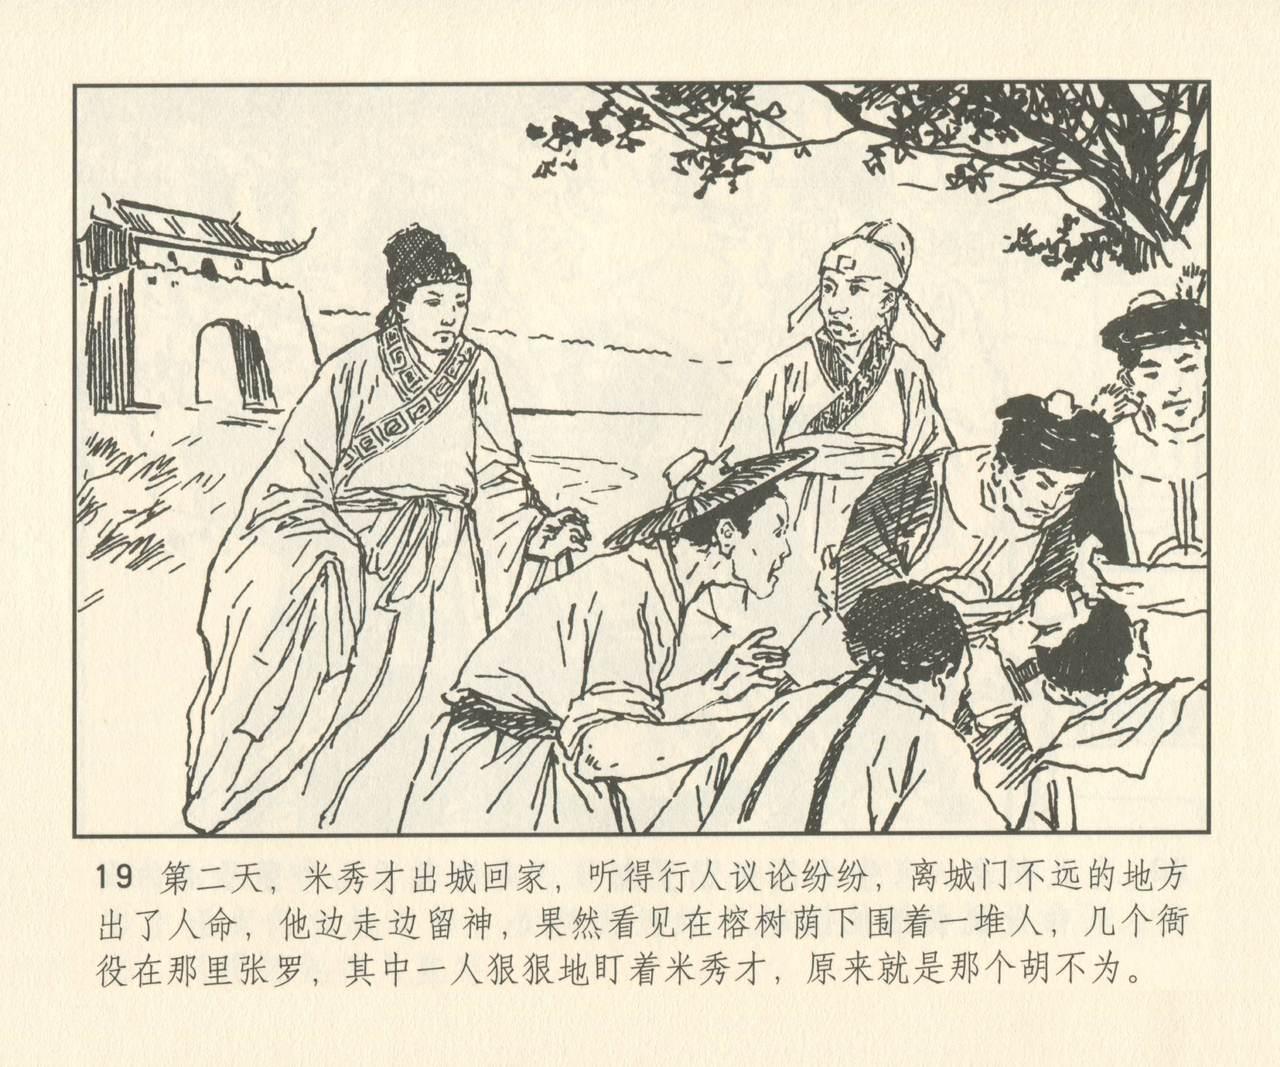 聊斋志异 张玮等绘 天津人民美术出版社 卷二十一 ~ 三十 147